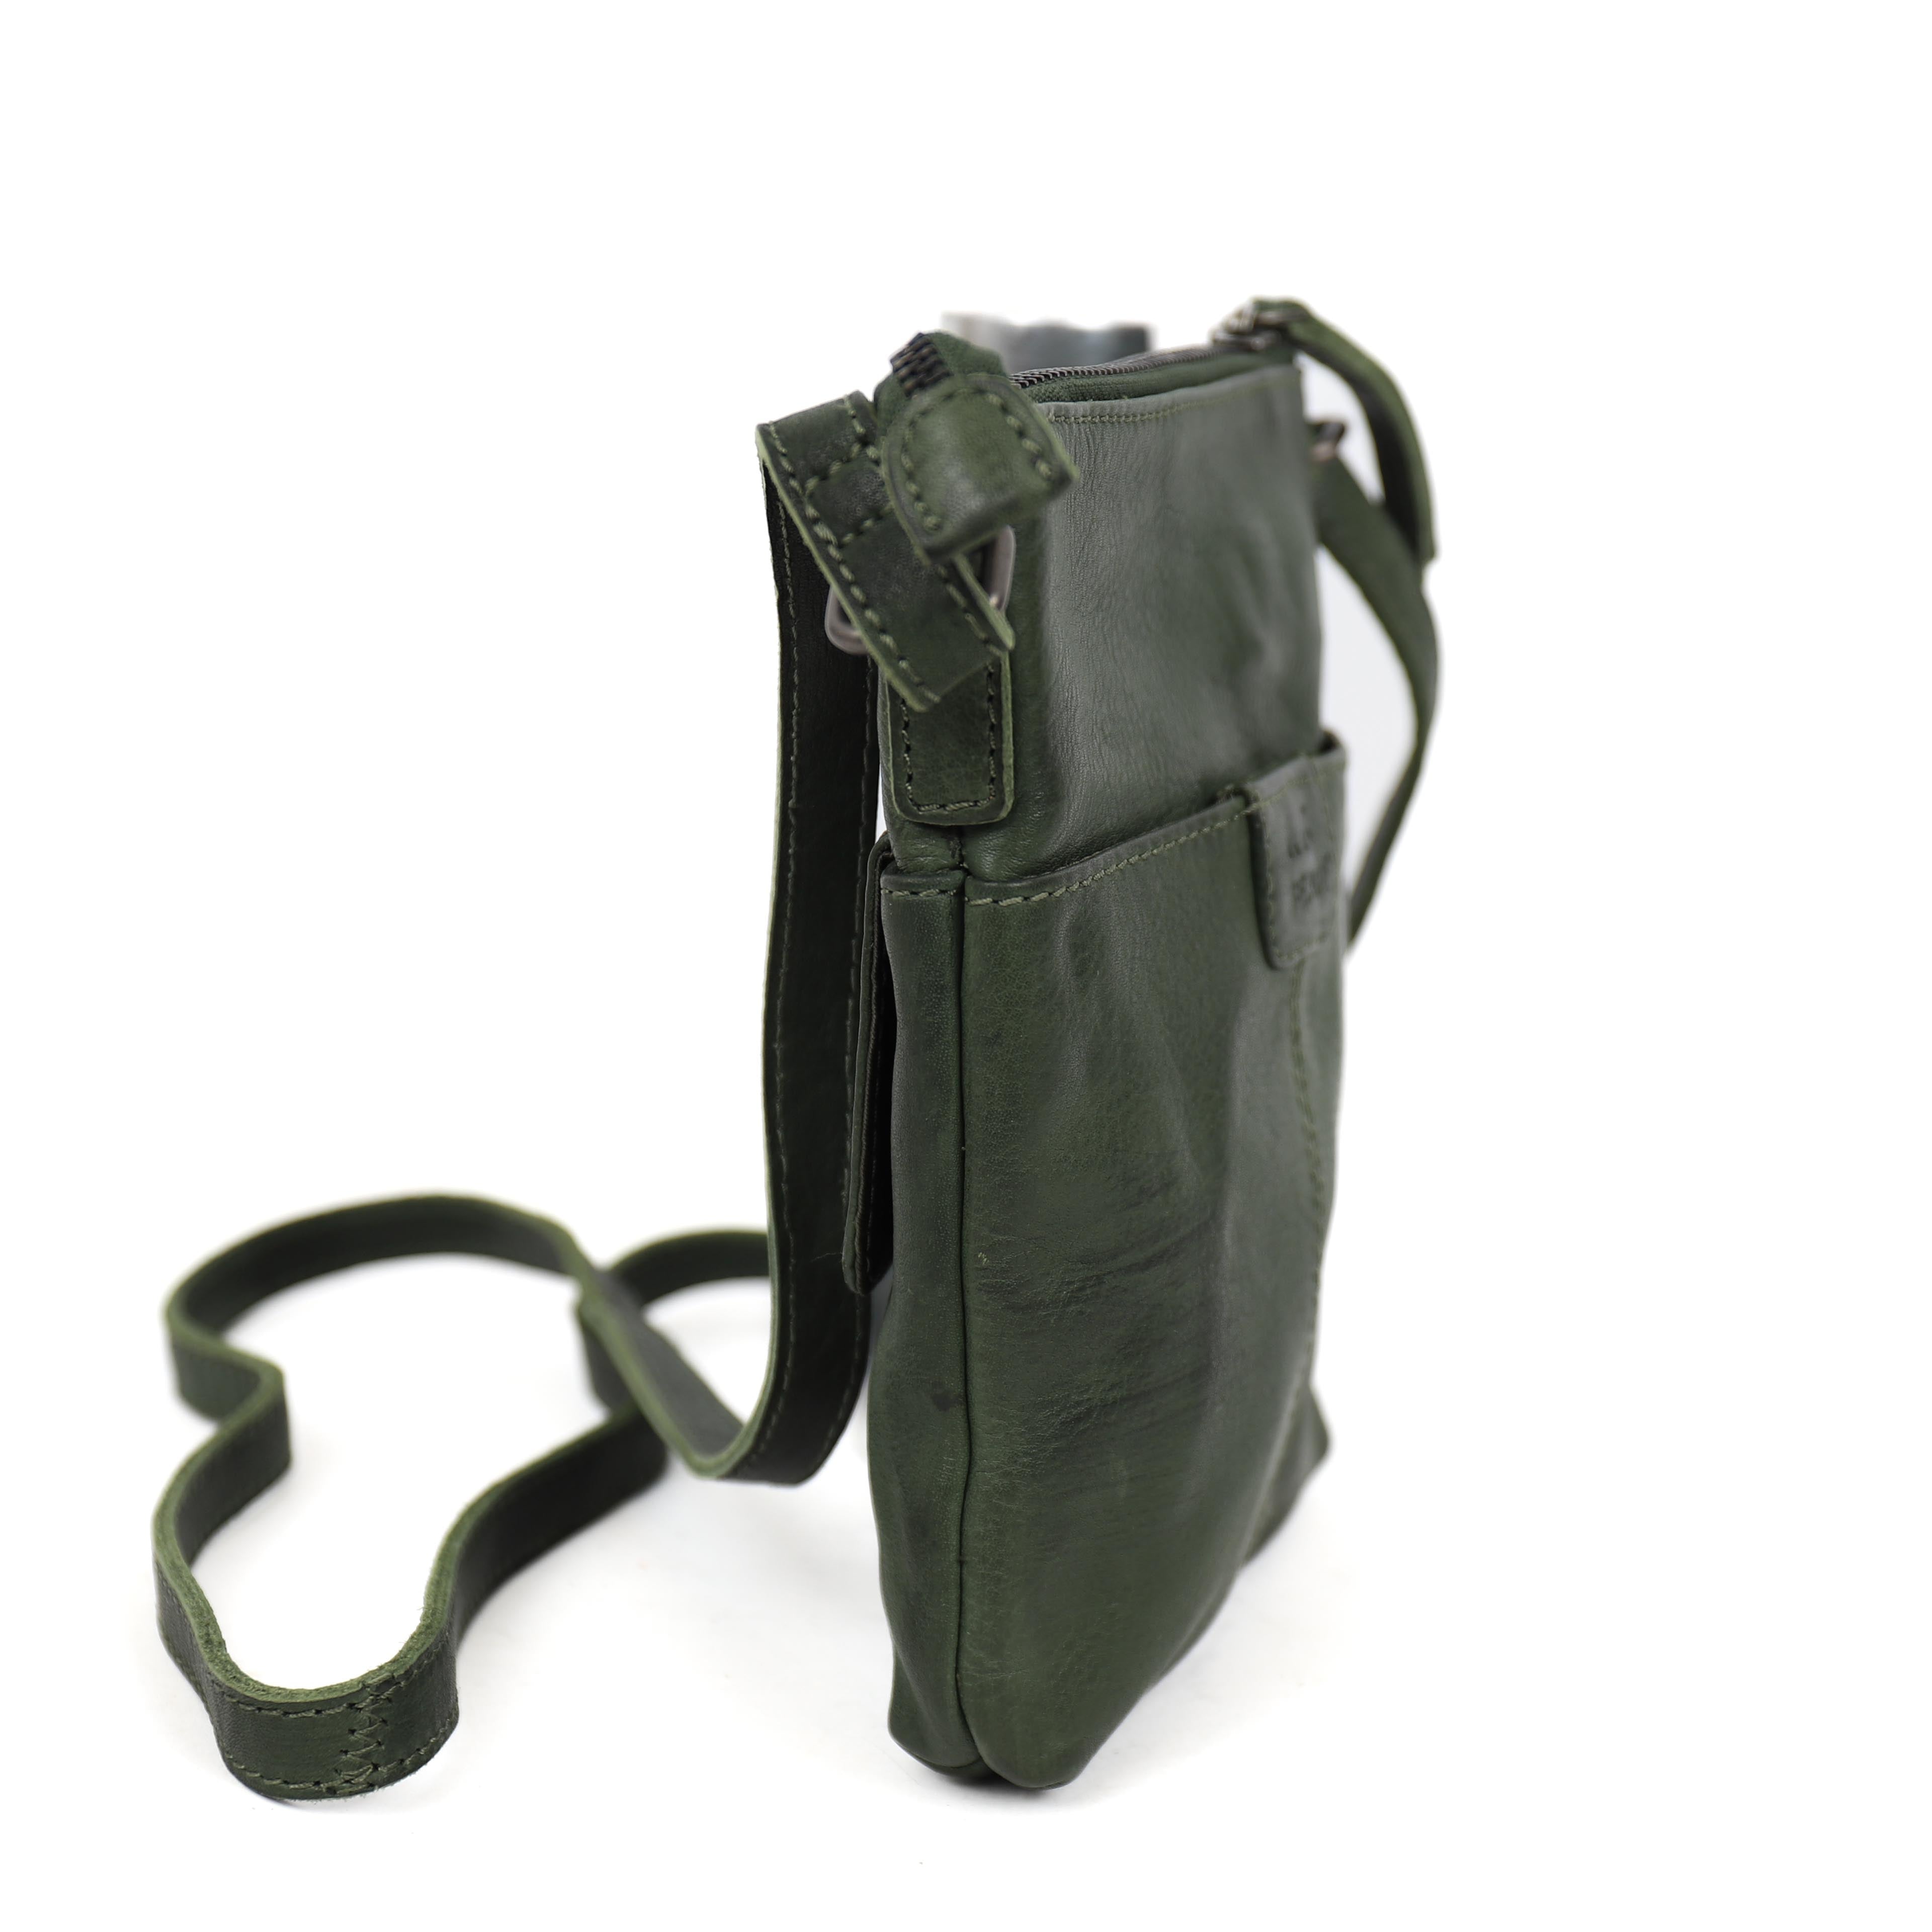 Shoulder bag 'Davide' green - CP 2327